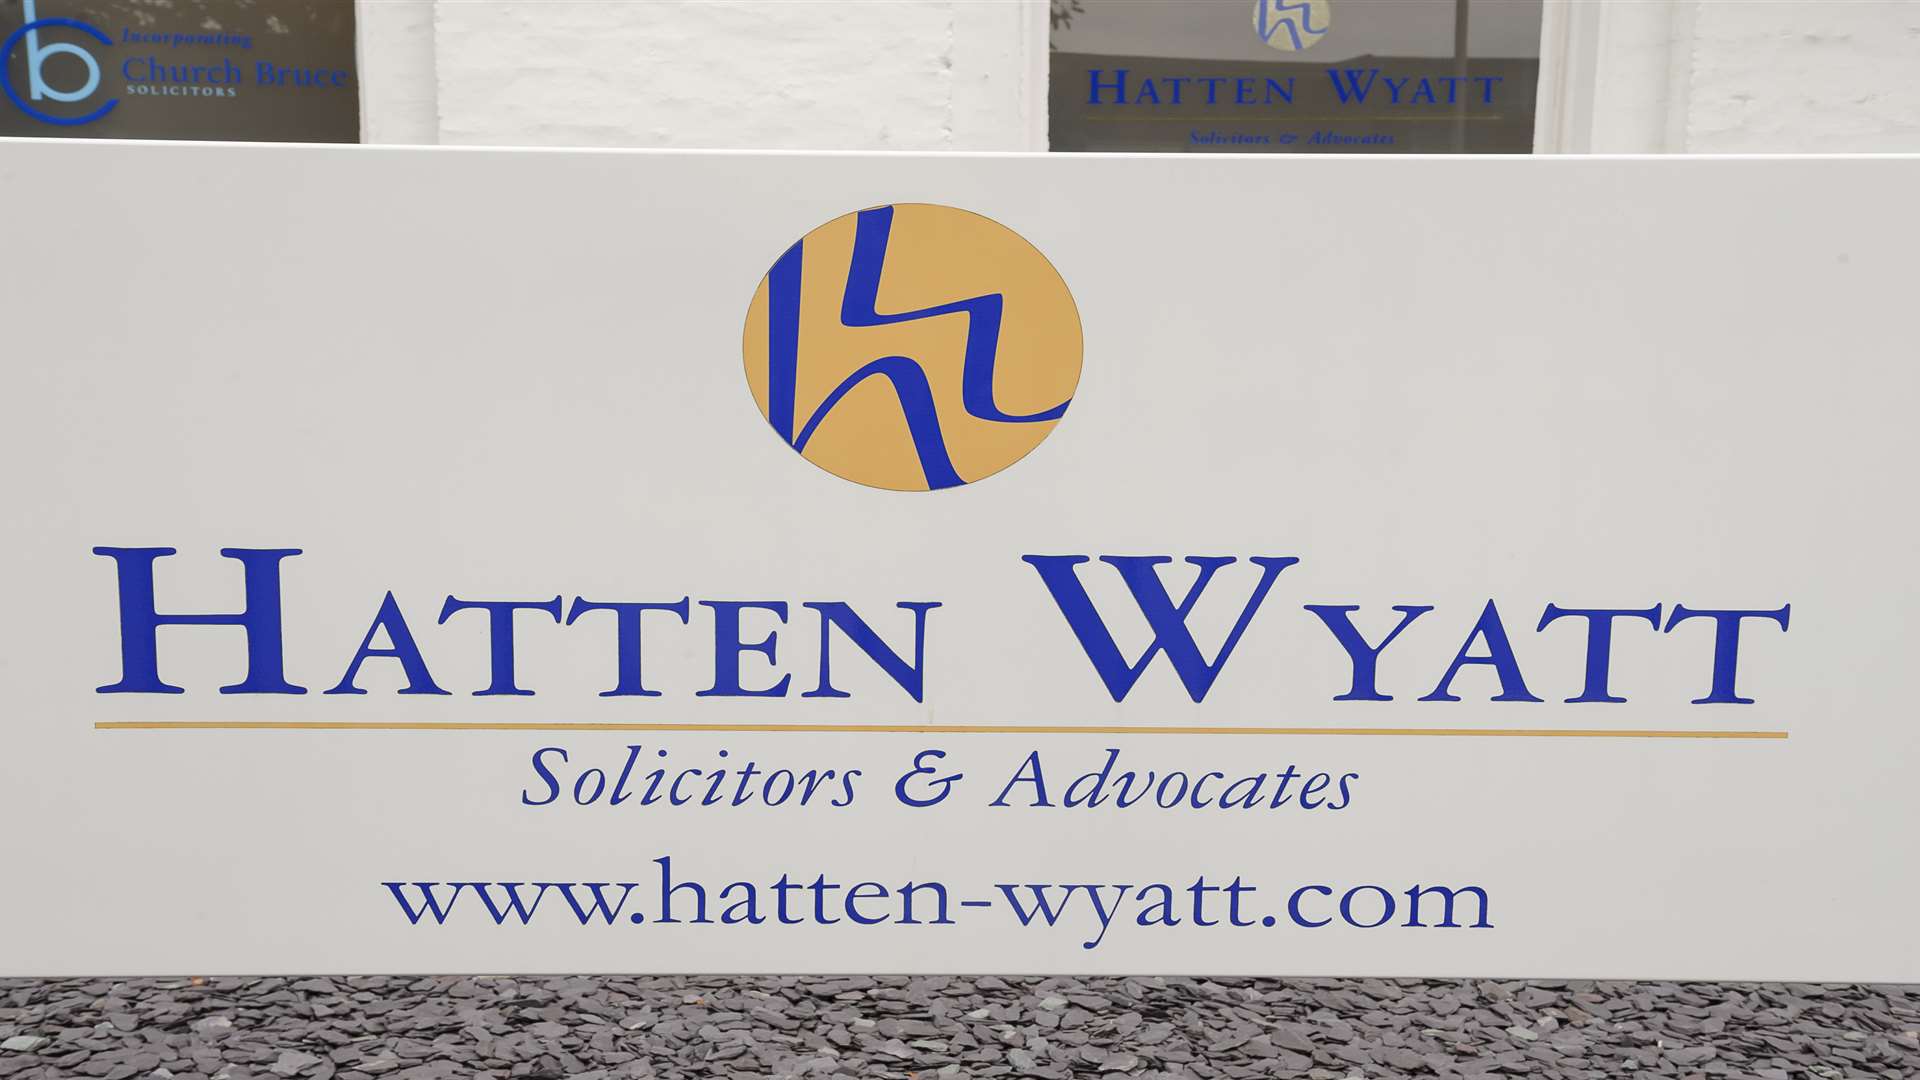 Hatten Wyatt is based in Windmill Street, Gravesend